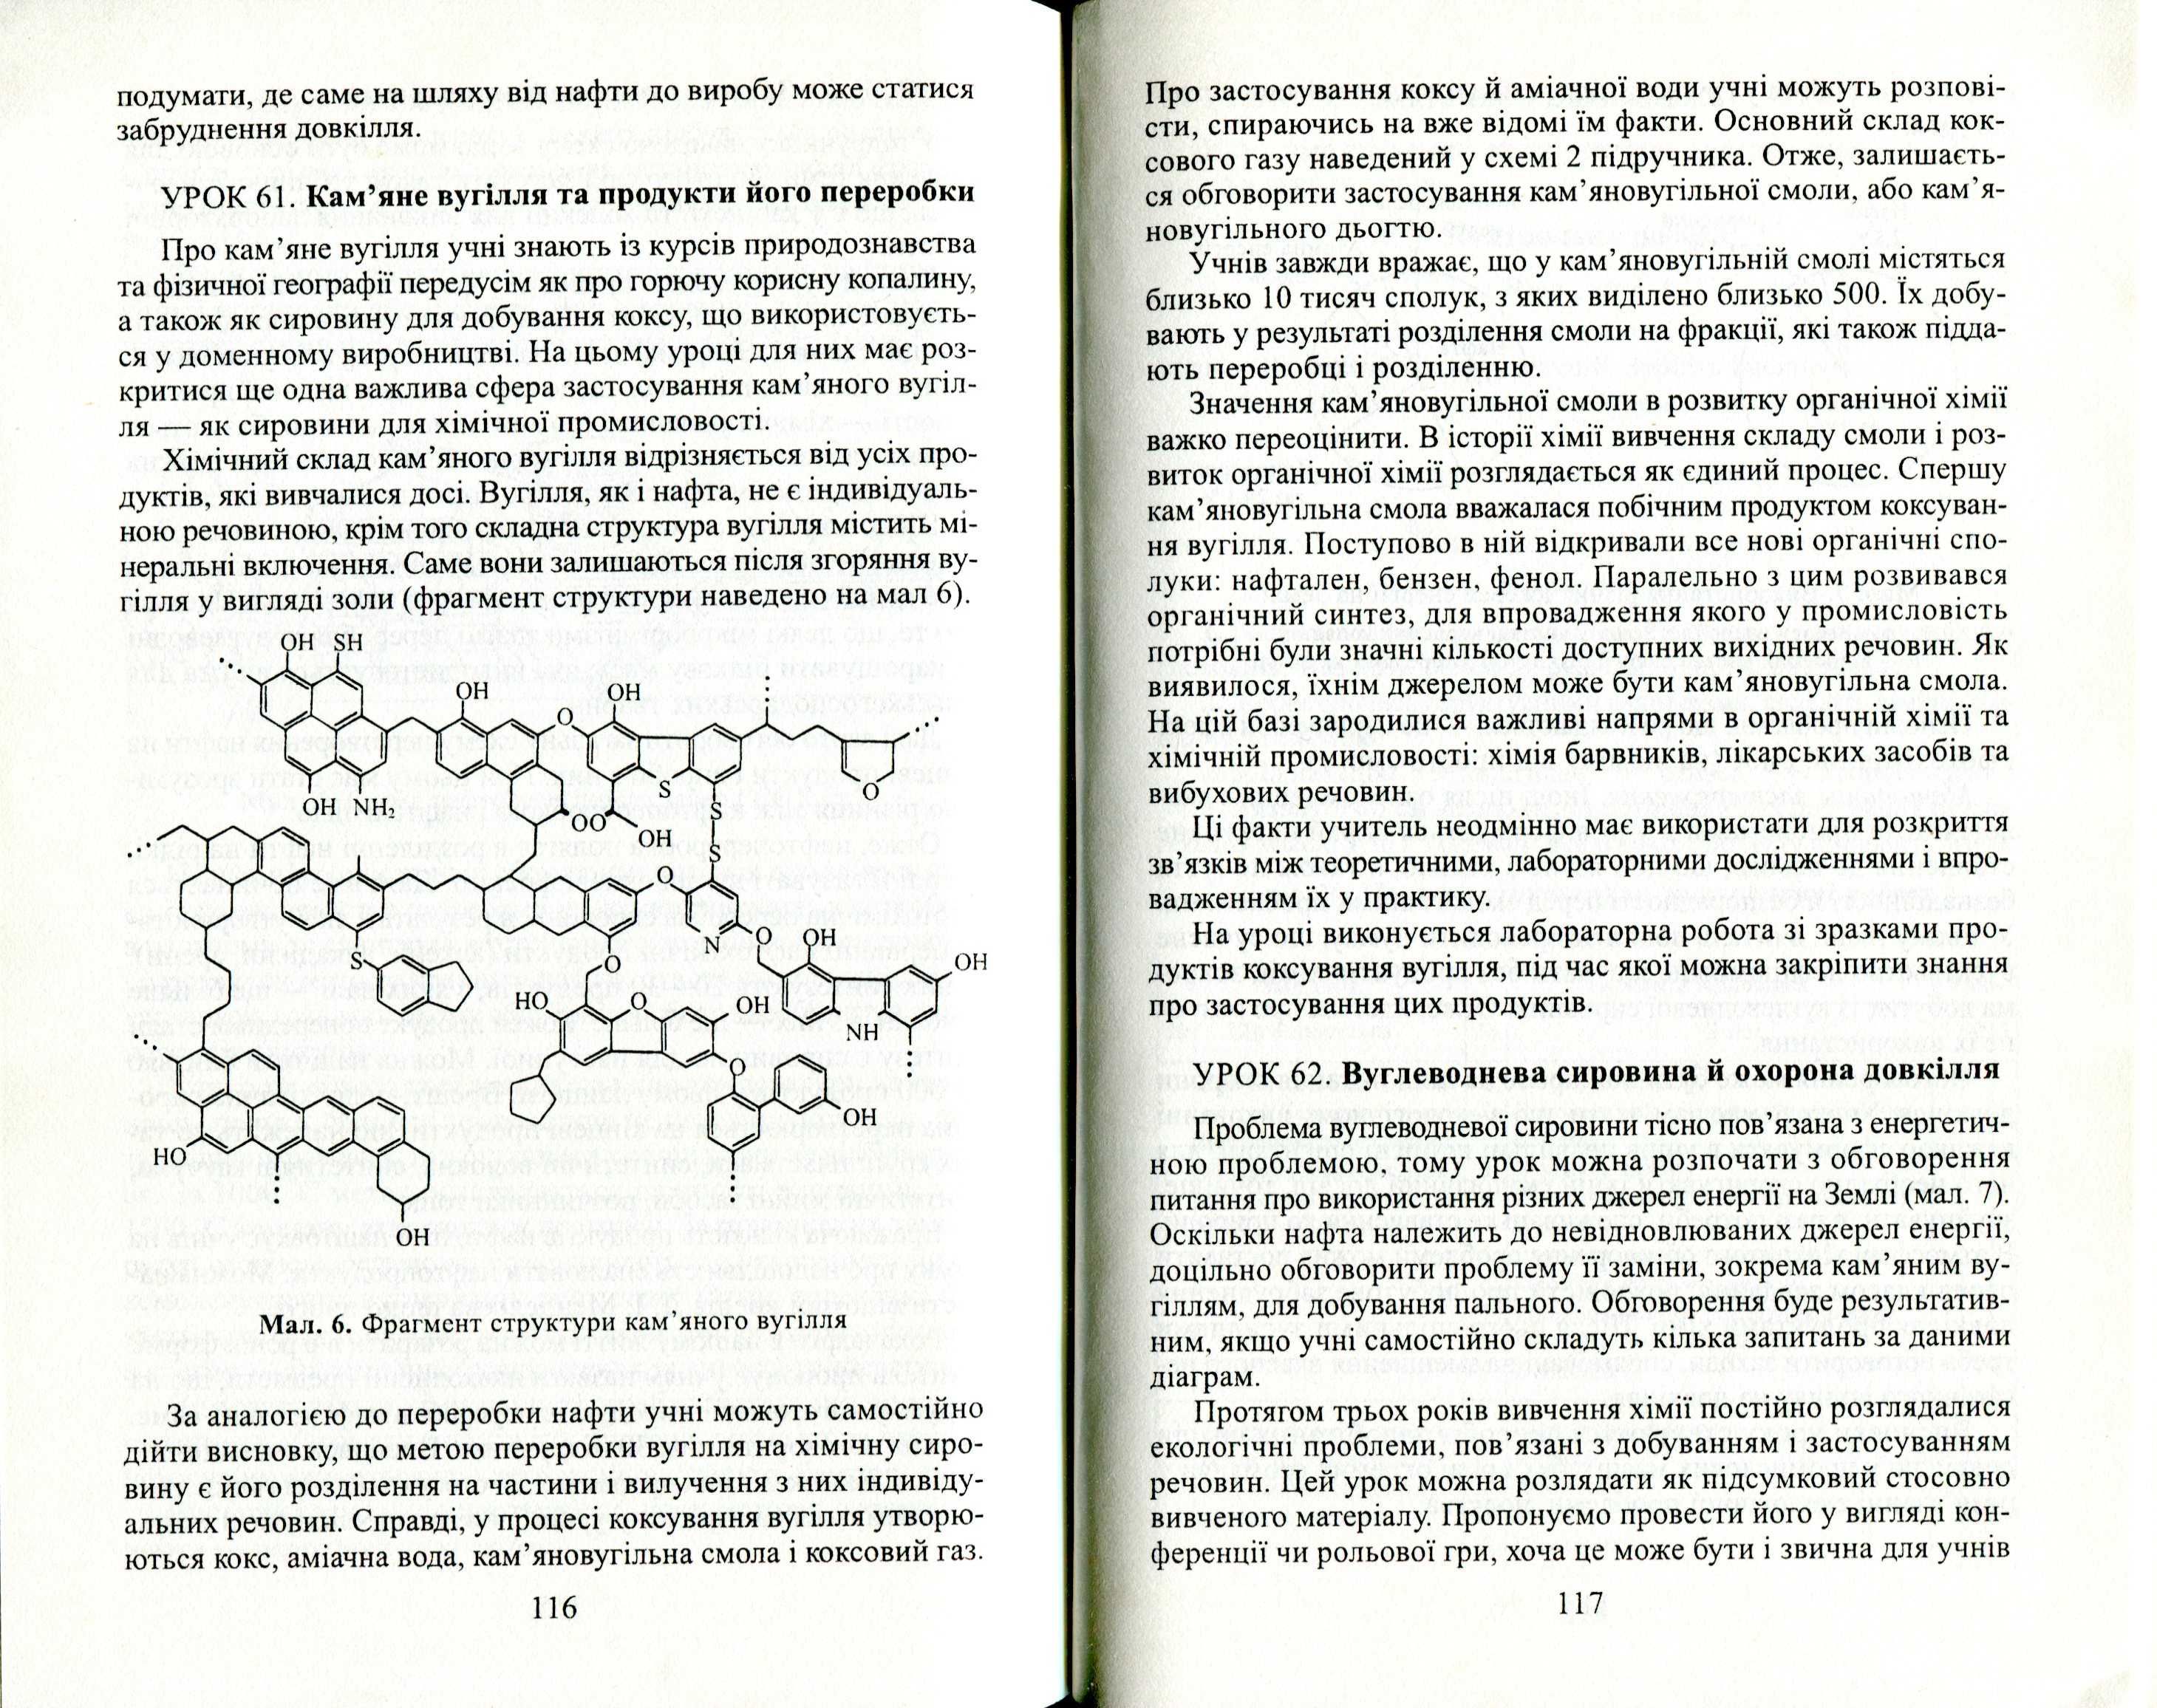 Викладання хімії у 10-11 класах загальноос. навчальних закладів (2002)